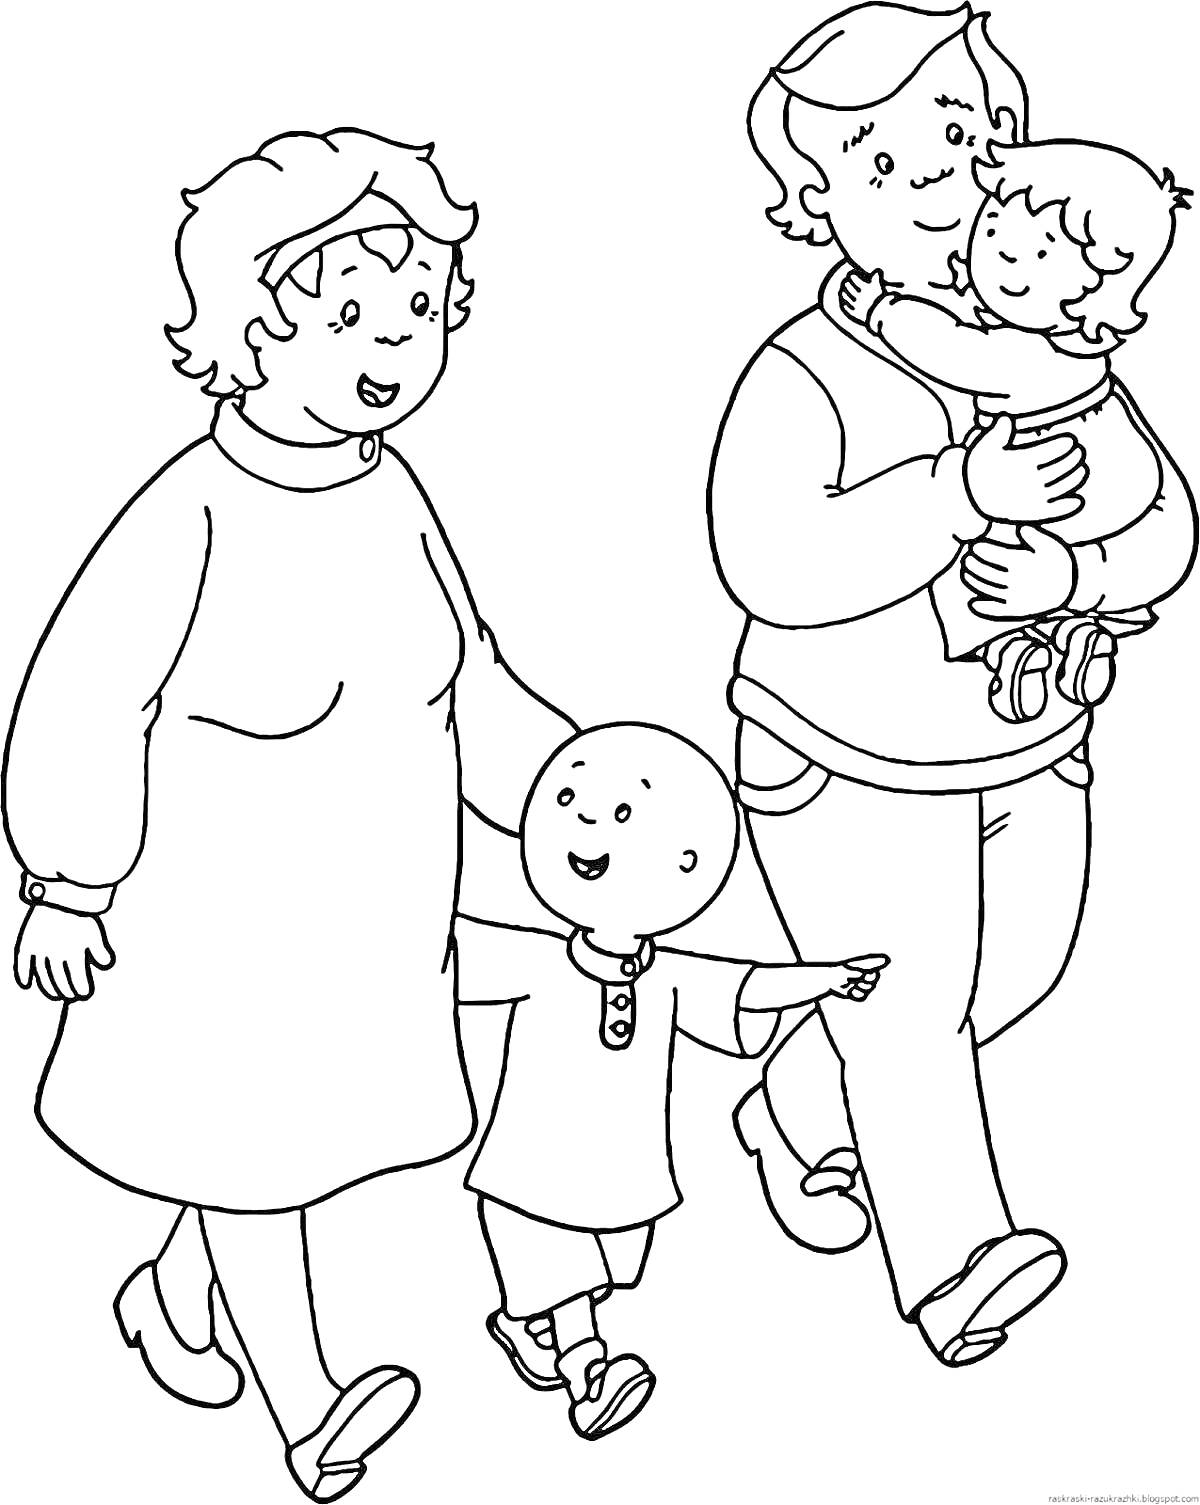 Раскраска Семья из четырех человек на прогулке - мужчина с ребенком на руках, женщина с ребенком за руку